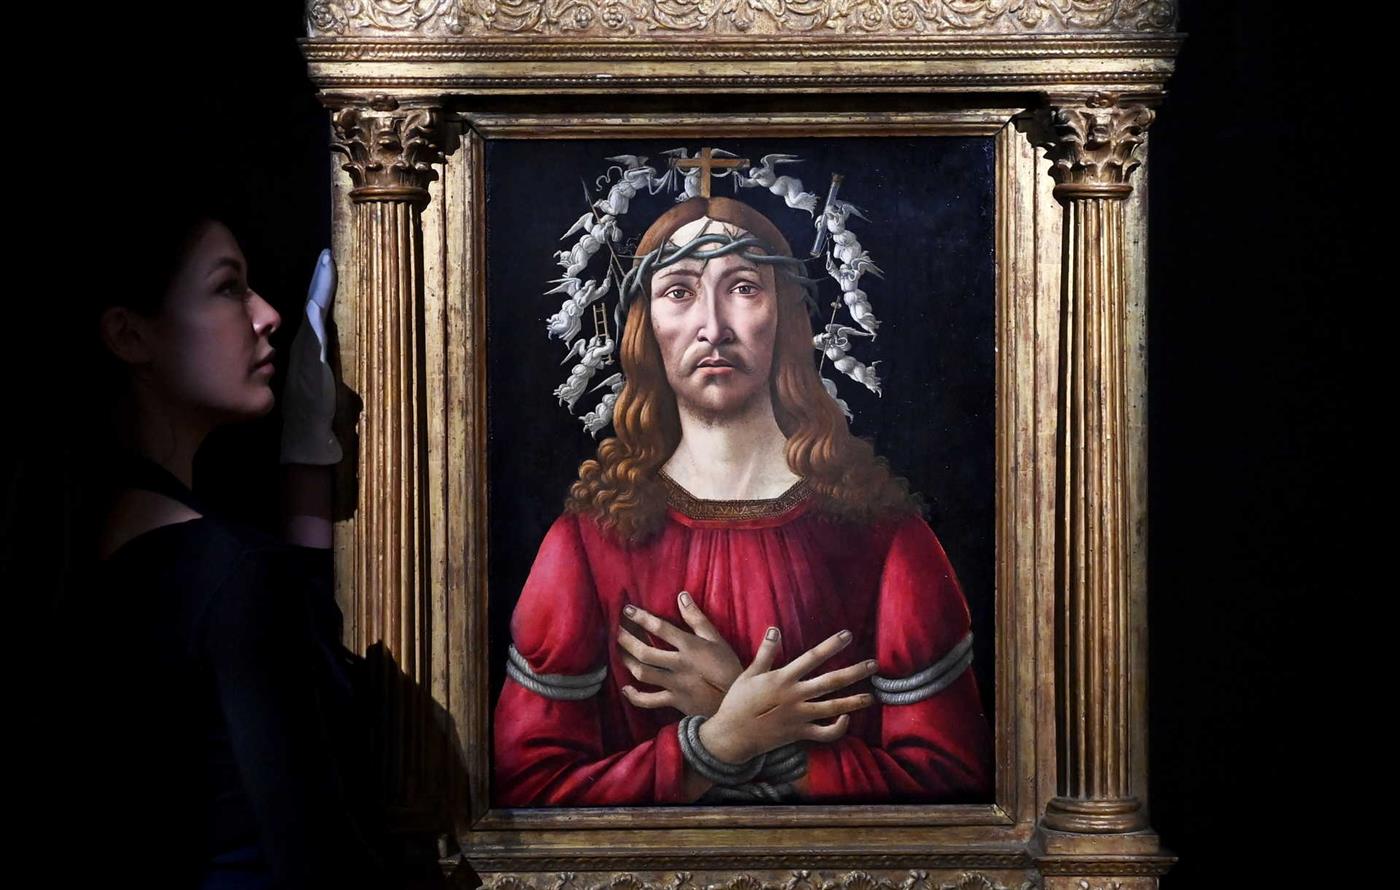 Pintura rara do mestre italiano Botticelli vendida em leilão por 40 ME